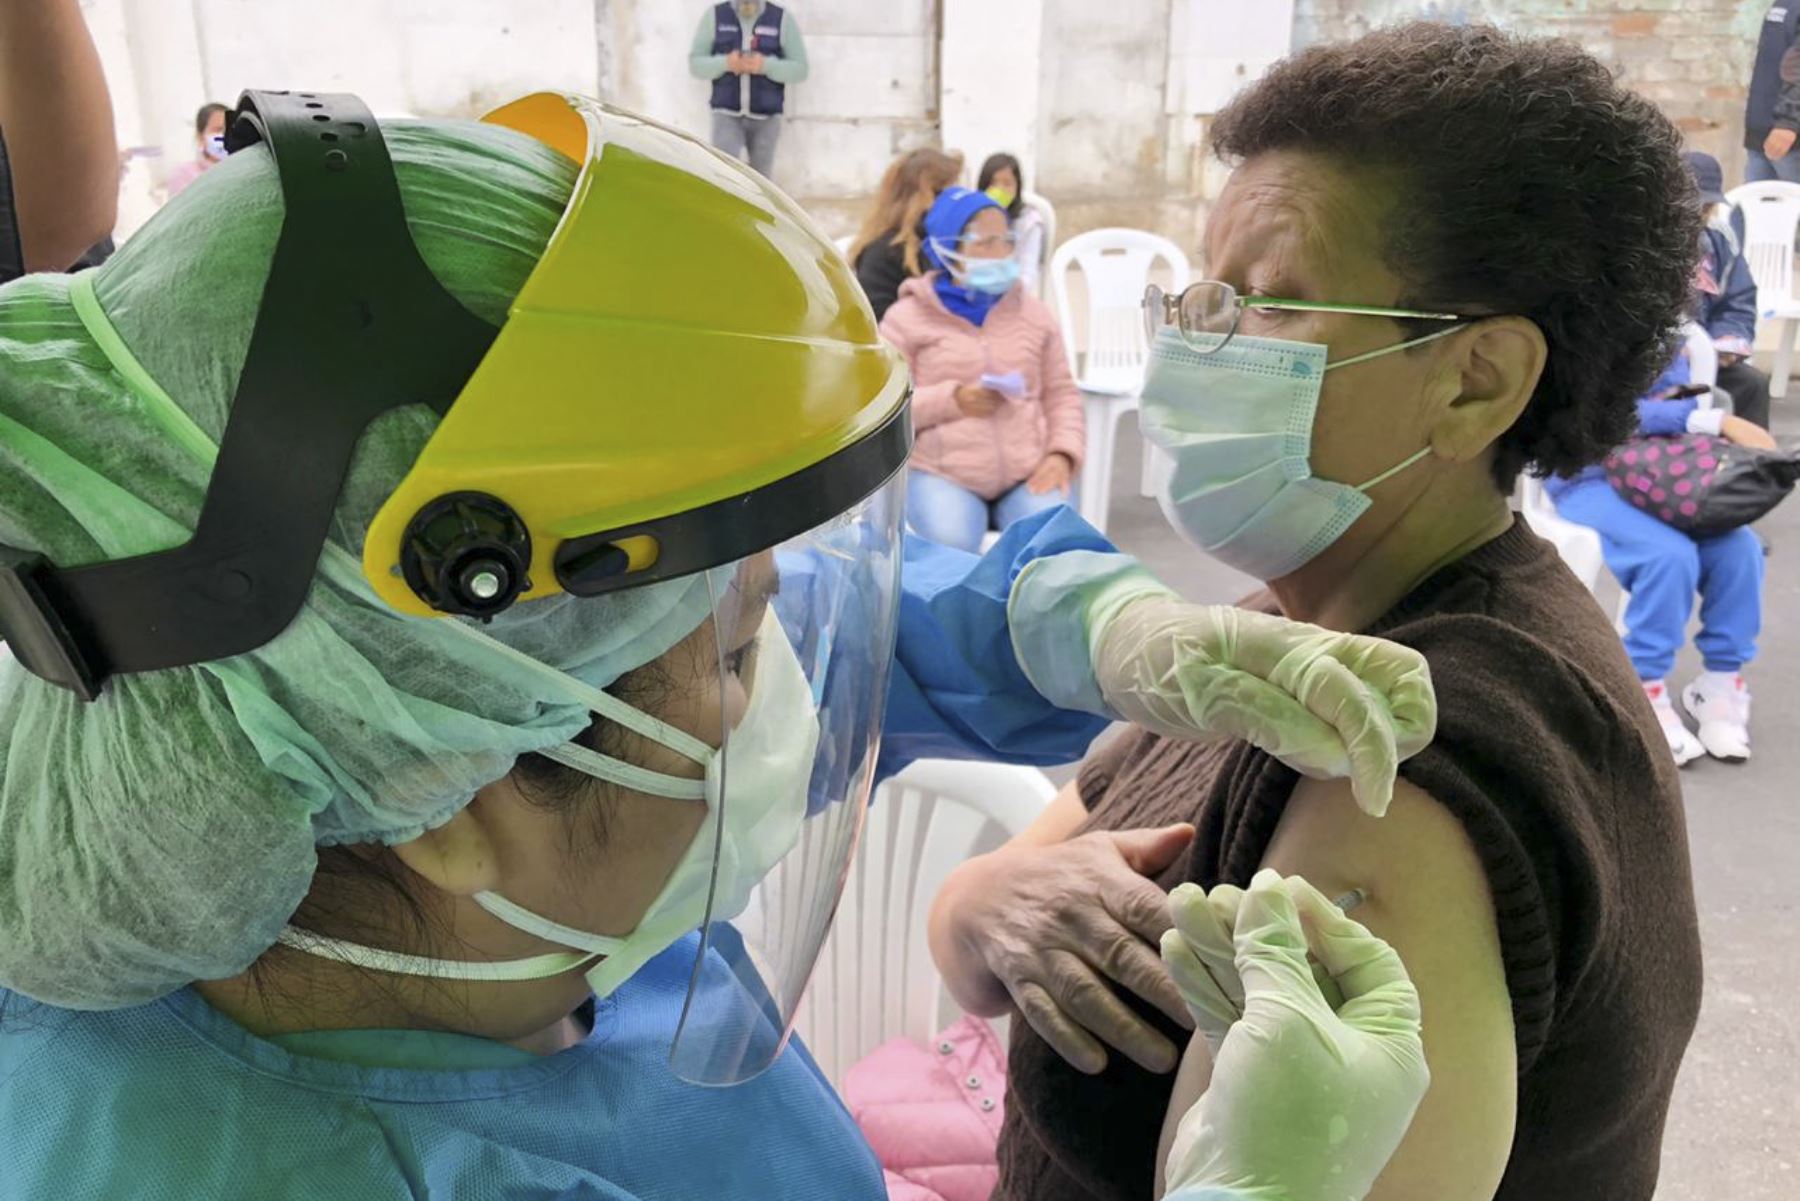 Minsa brinda atención médica integral en varios distritos de Lima. Se realizaron descartes de covid-19, anemia, TBC, vacunación, consejería nutricional, entre otros servicios. Foto: Minsa